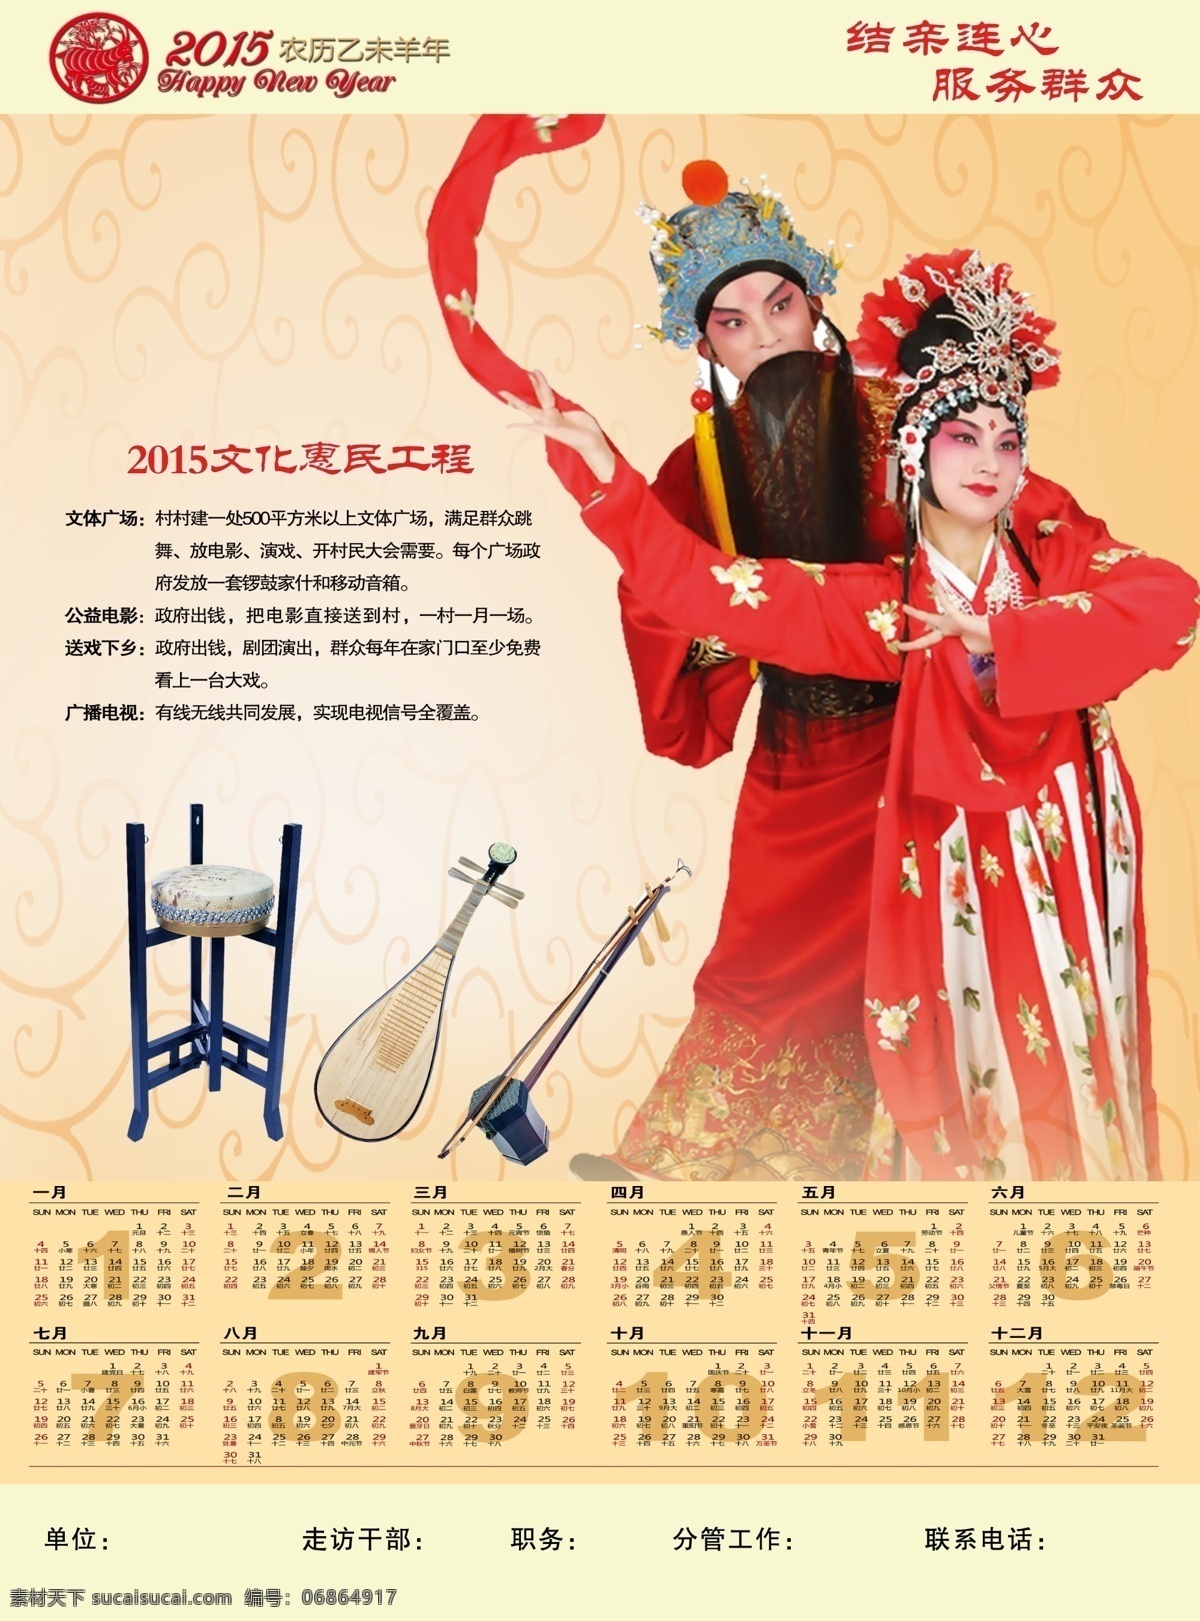 文化下乡 惠民工程 戏曲人物 古筝 二胡 文化艺术 传统文化